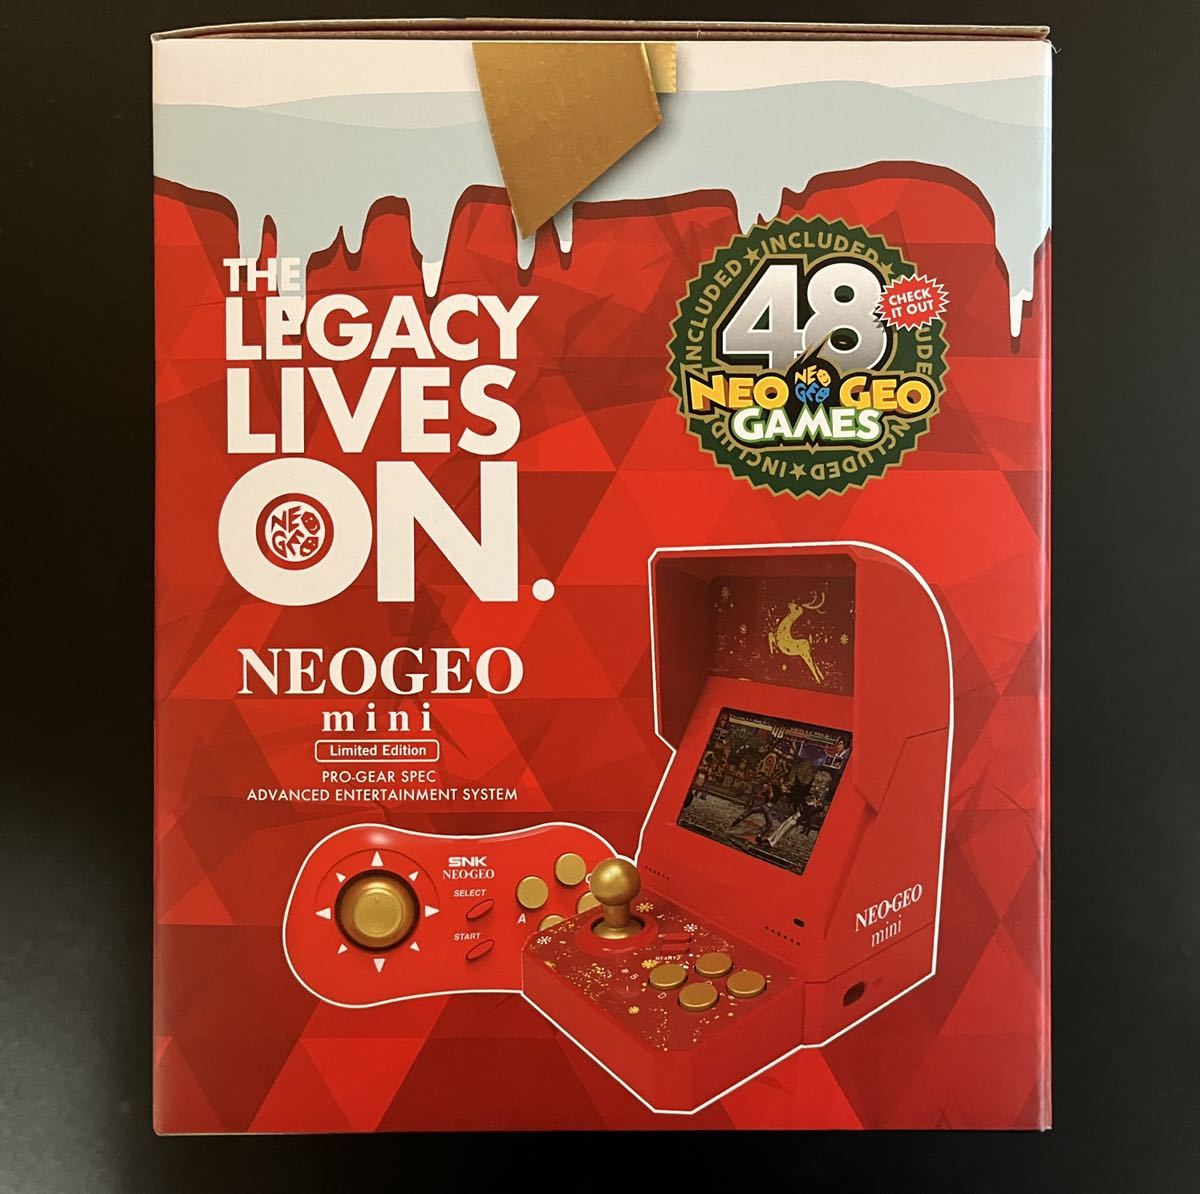 新品未開封品 NEOGEO mini Limited Edition ネオジオミニ クリスマス限定版 SNK 40th Anniversary 新品未使用の画像2